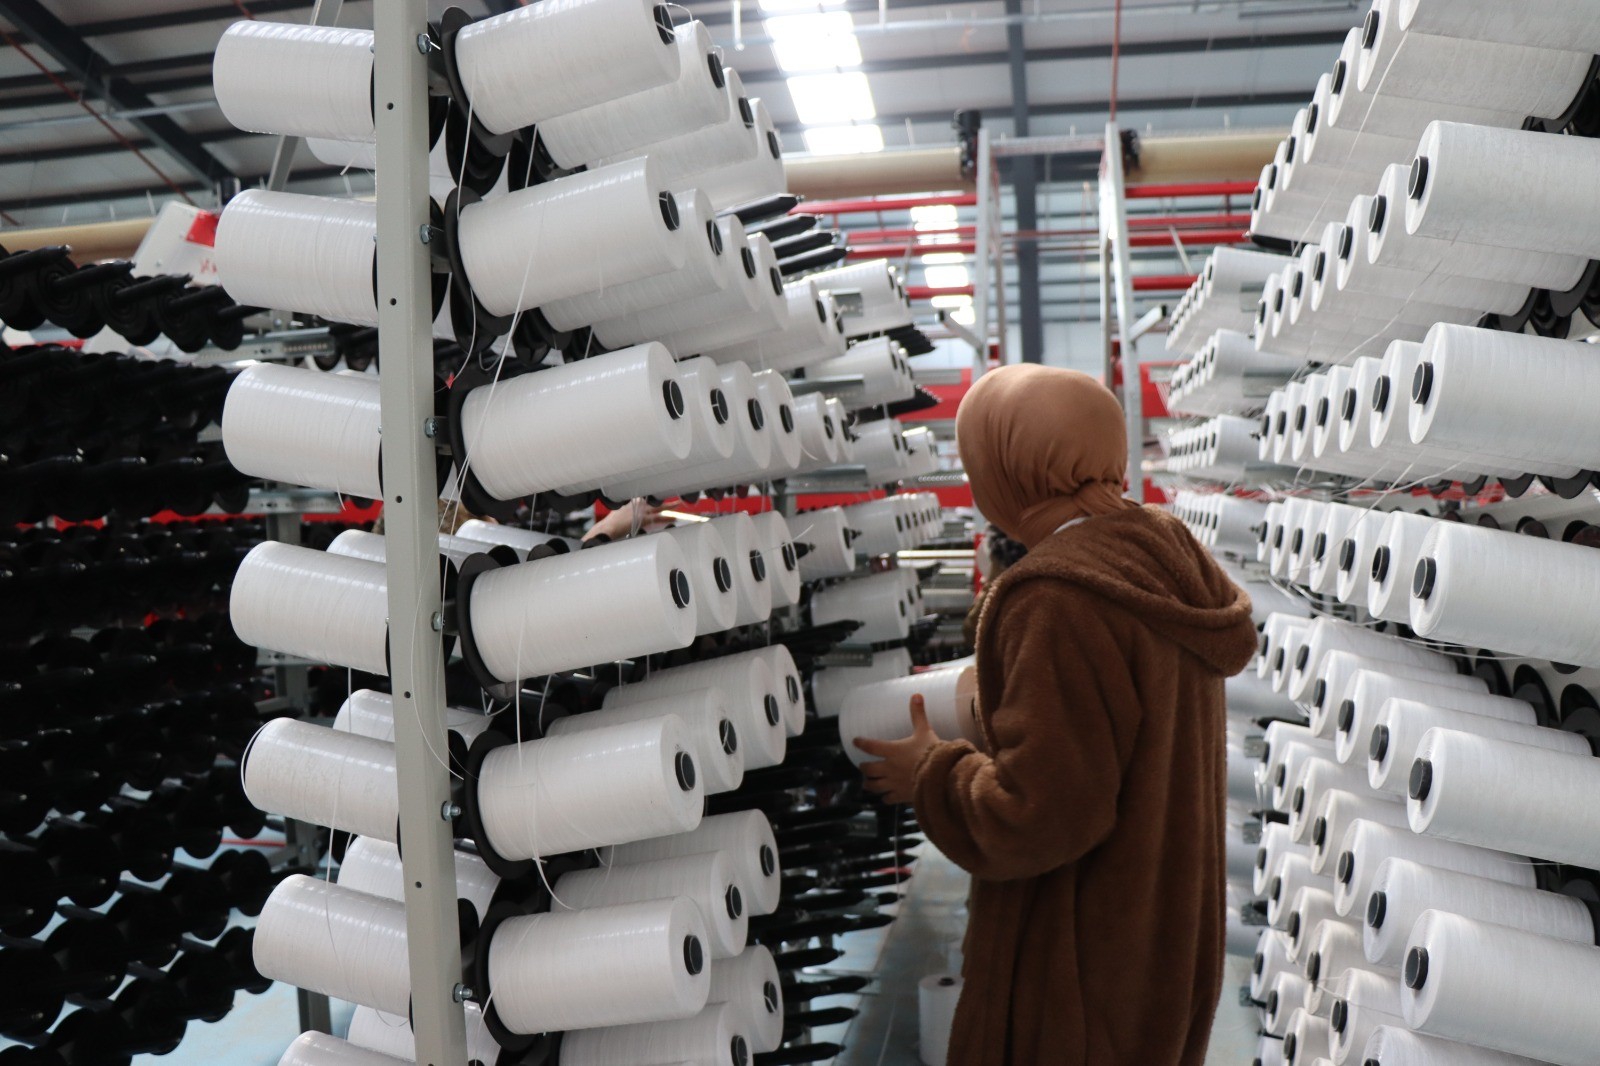 Oltu çuval fabrikasında 350 kişi iş başı yaptı